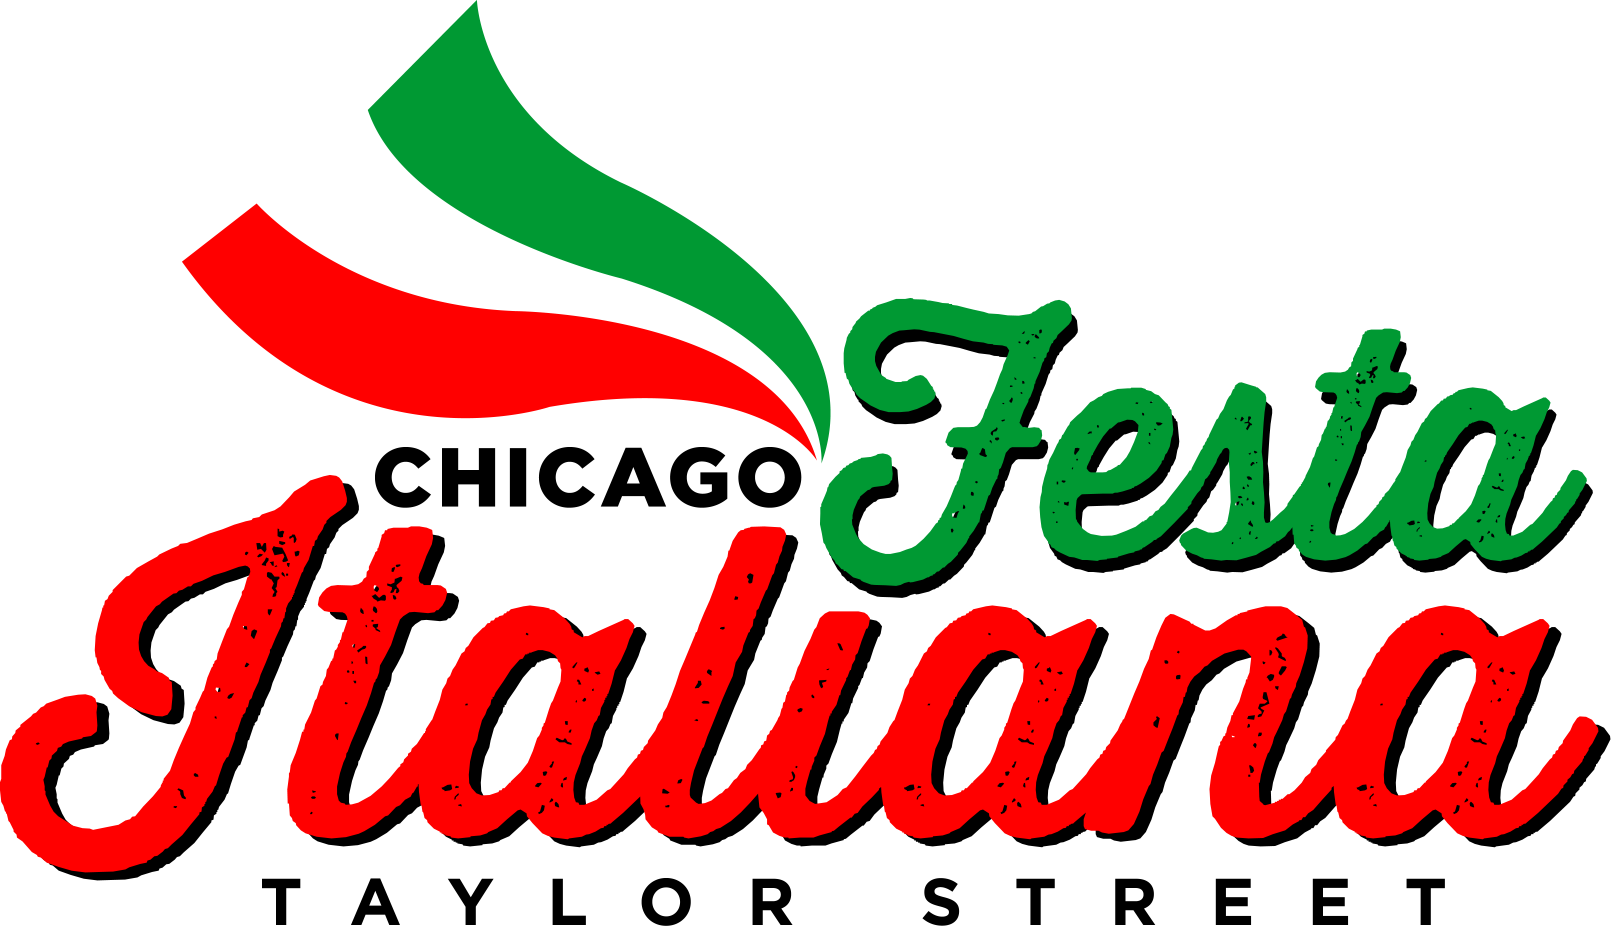 italy clipart festival italian